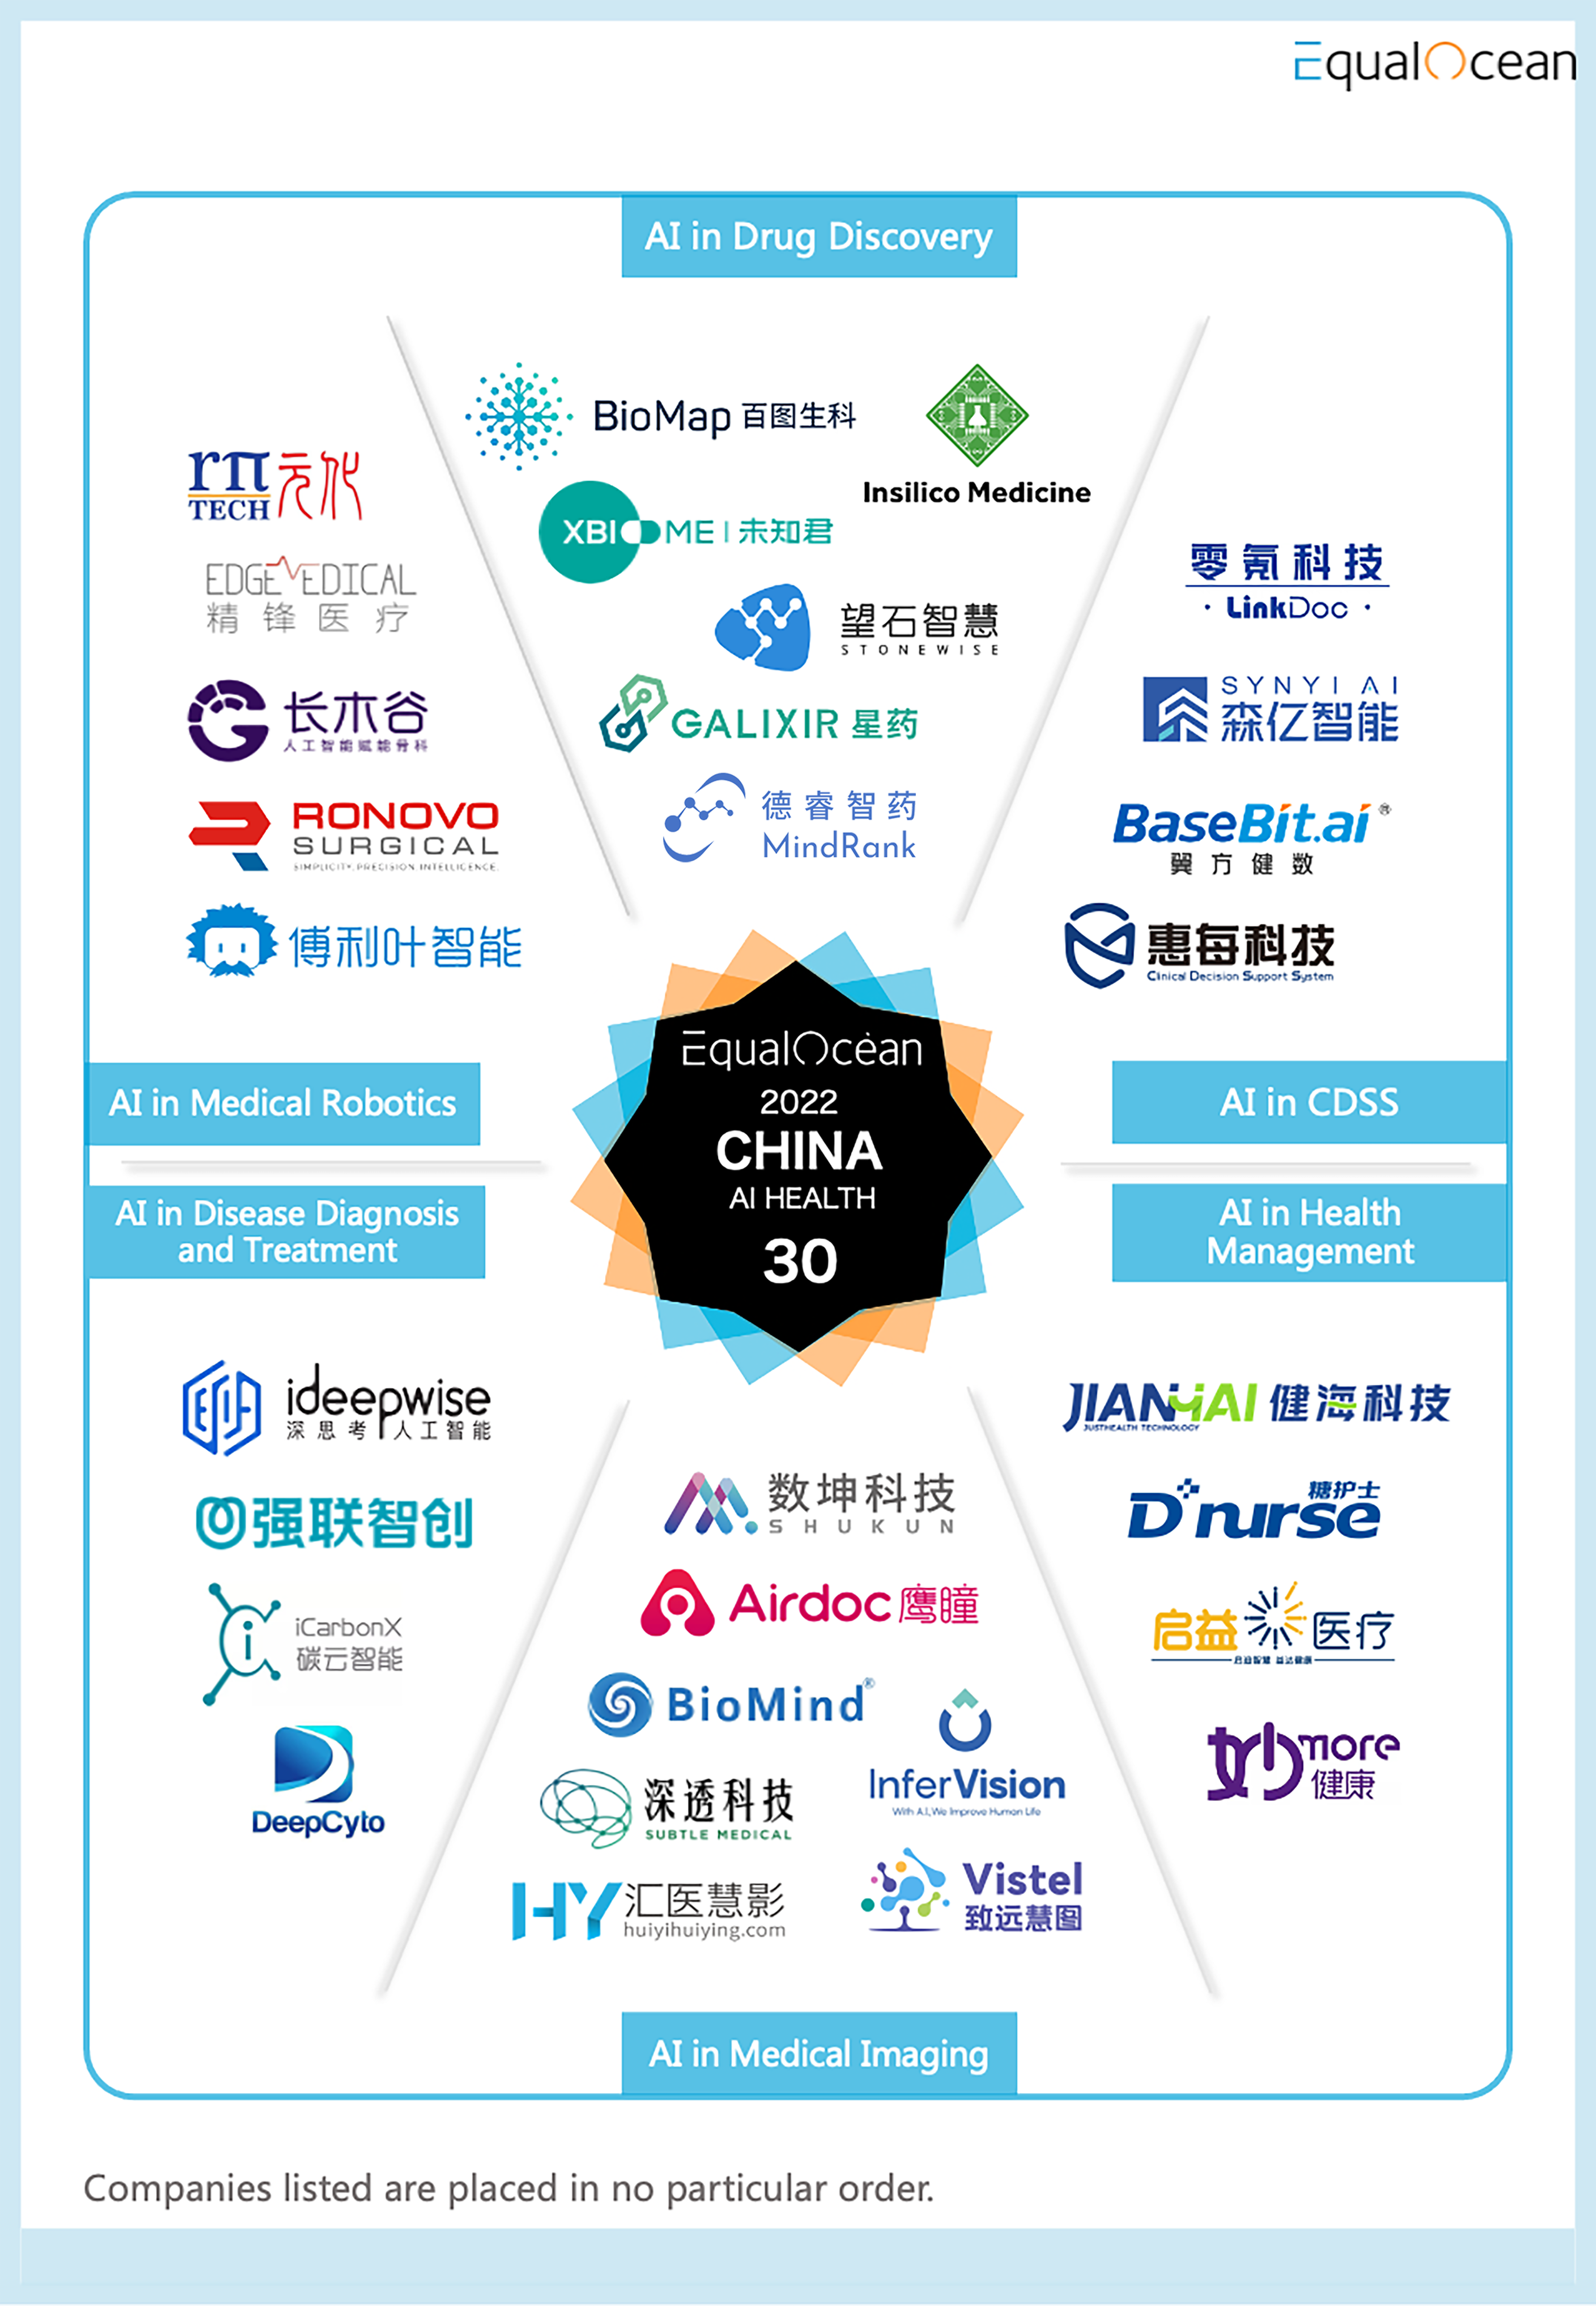 China AI Health 30.png.png